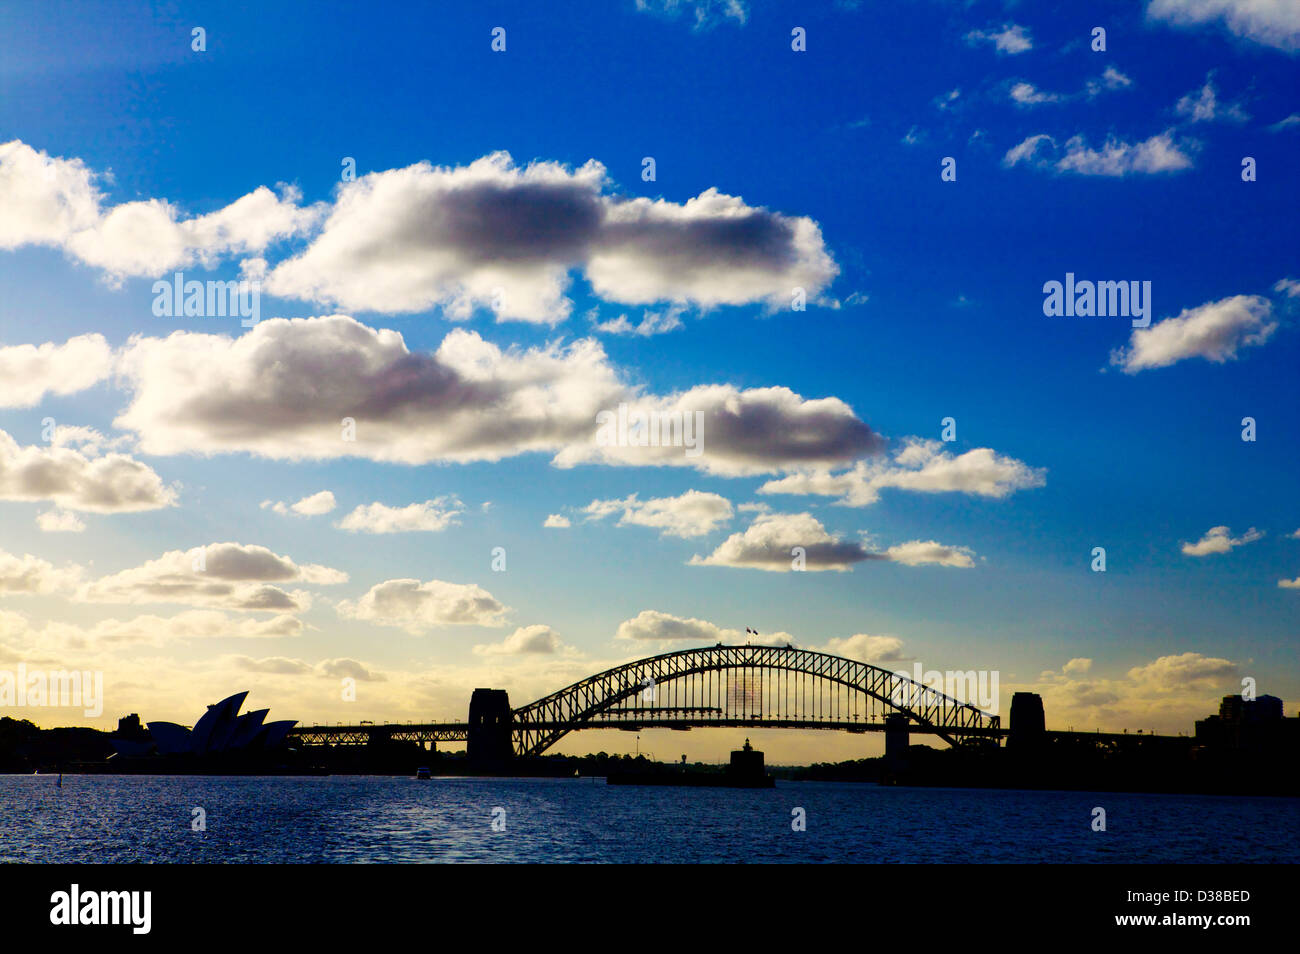 Sonnenuntergang über der Sydney Harbour Bridge und das Opernhaus am Bennelong Point, Sydney New South Wales Australien Landscape [Land] Stockfoto